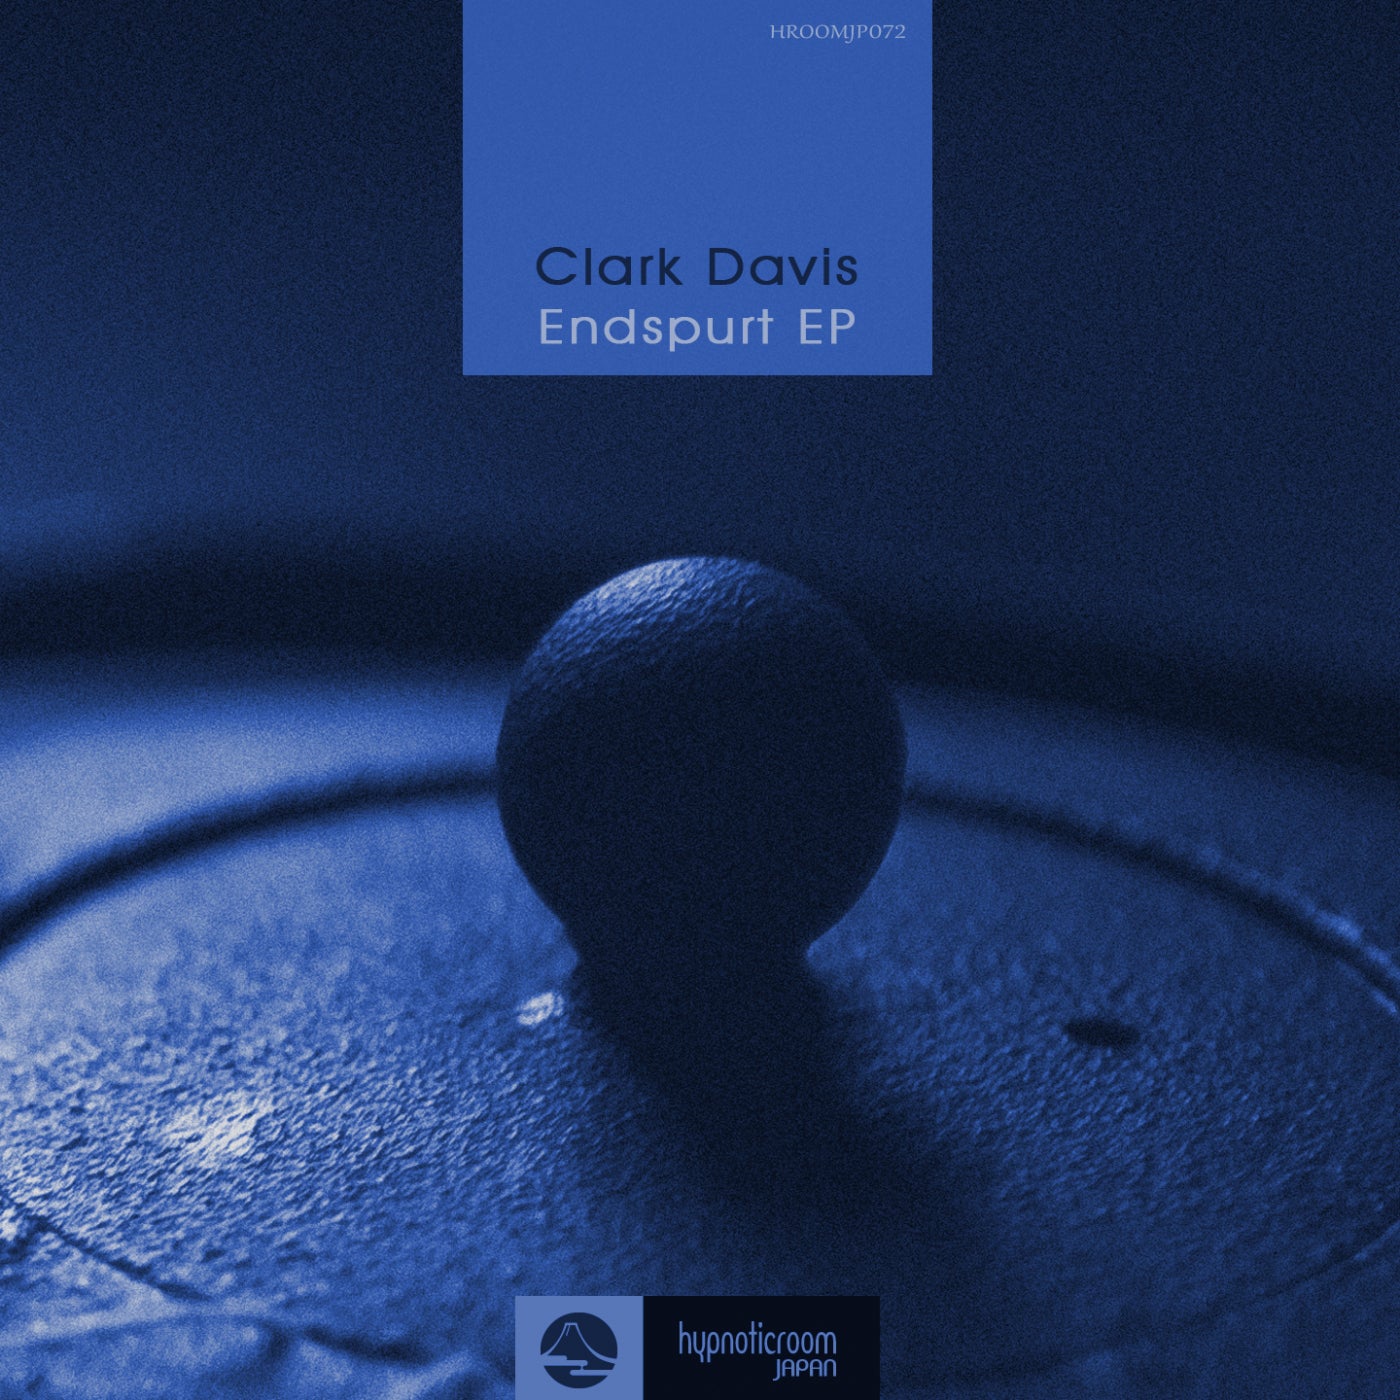 Clark Davis - Endspurt EP [HROOMJP072]